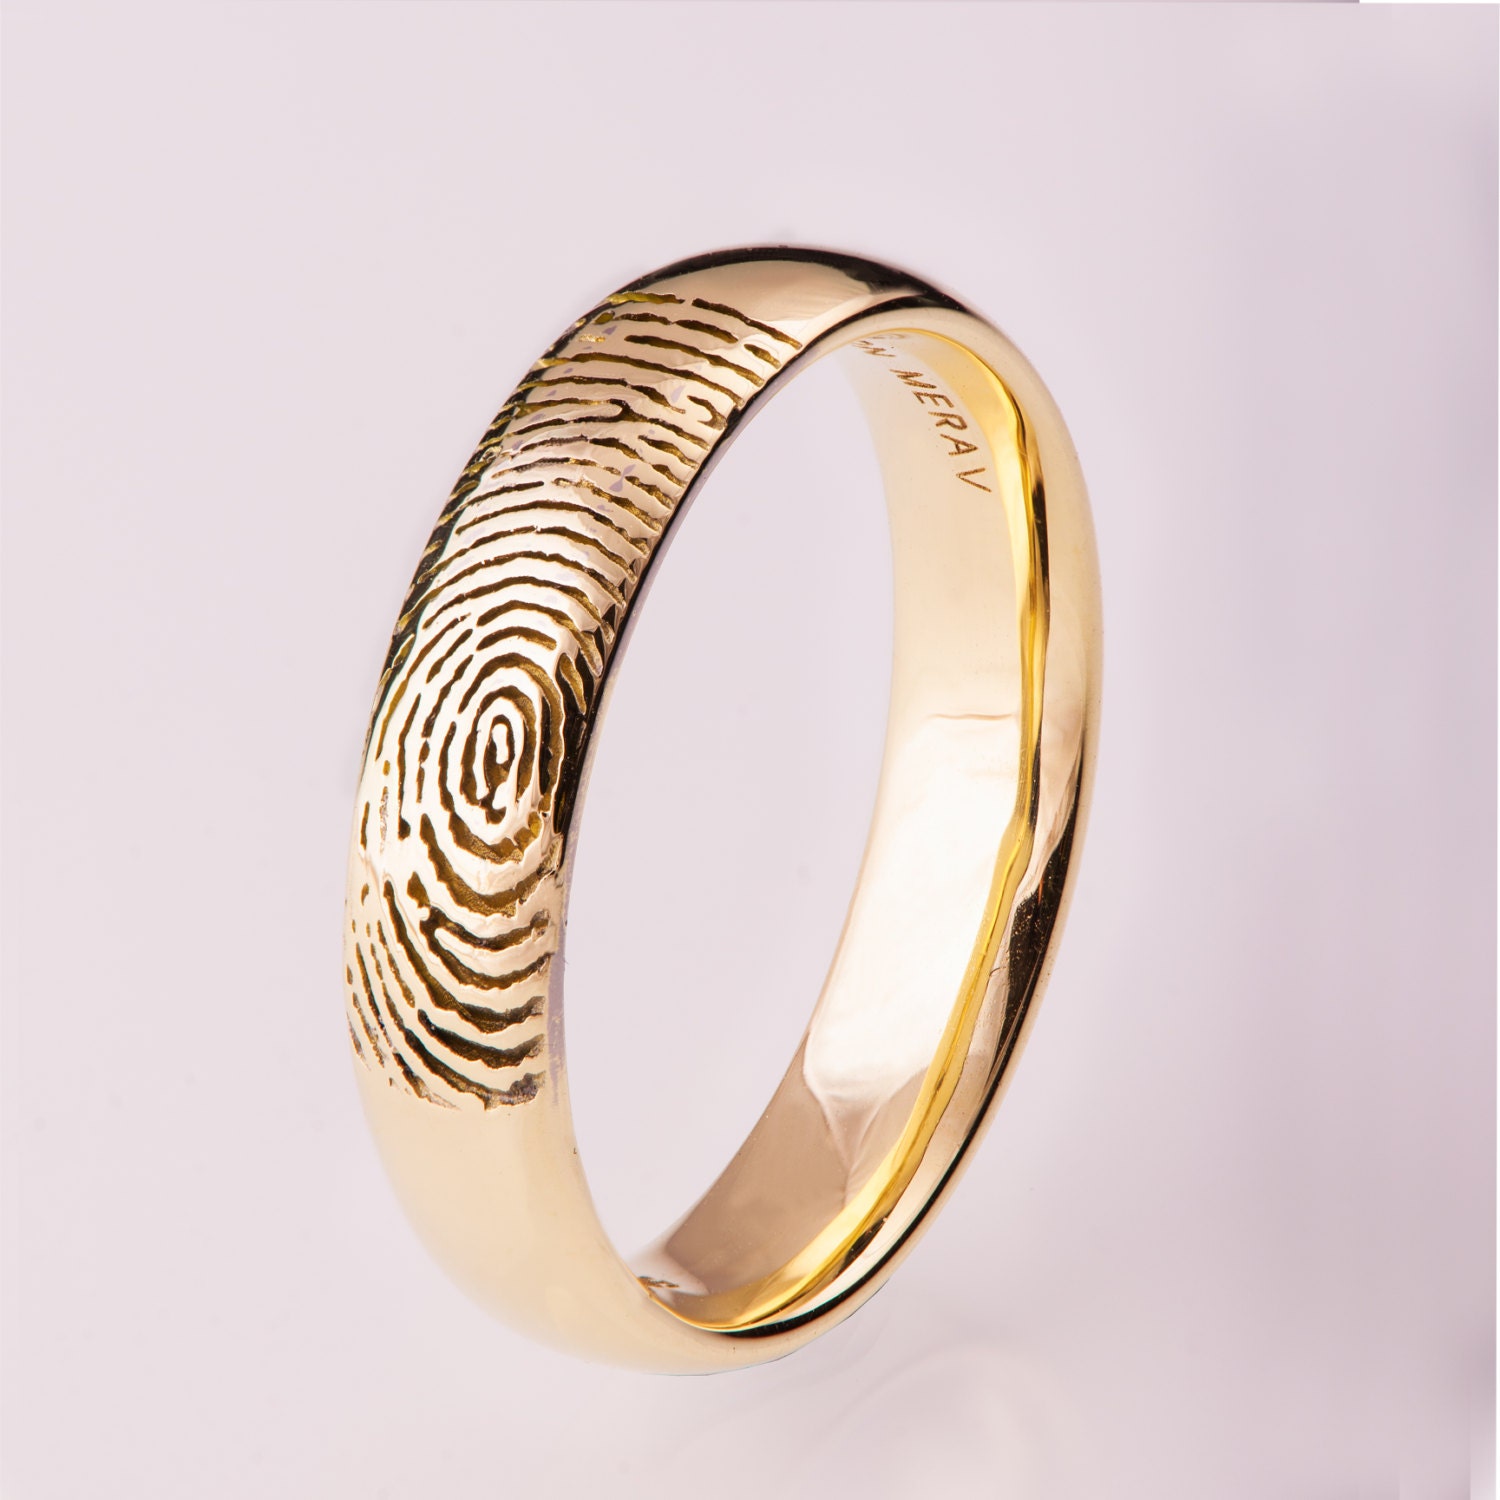 Adjustable Fingerprint Ring | Centime Gift